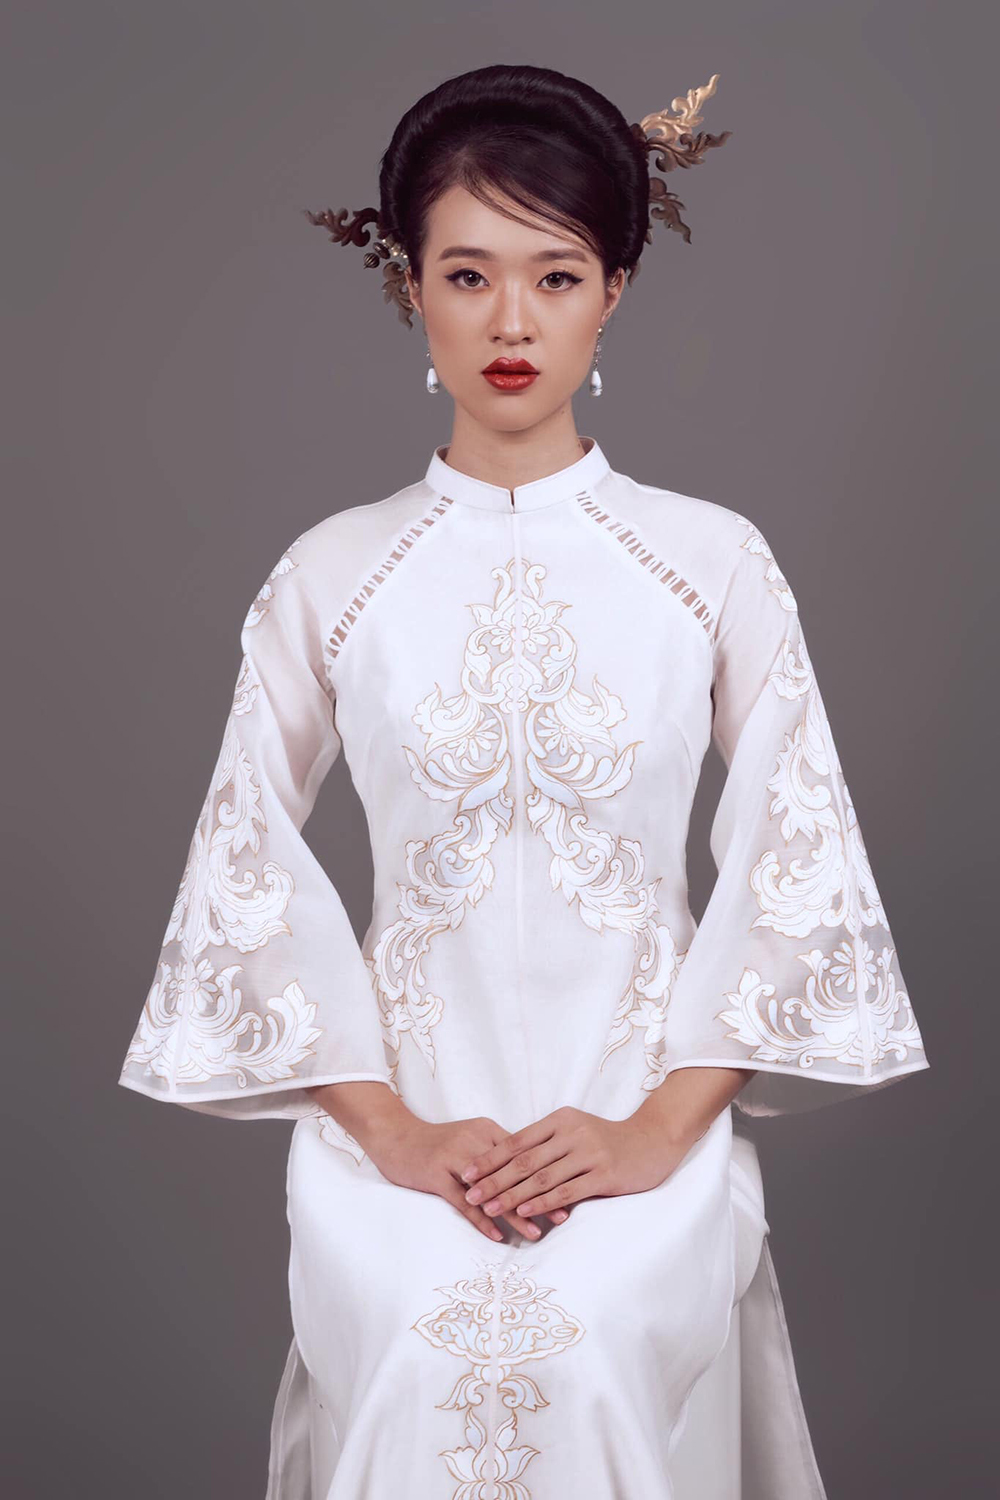 Hồ Thị Yến Nhi, 19 tuổi, là thí sinh cao thứ hai tại Miss World Vietnam 2022